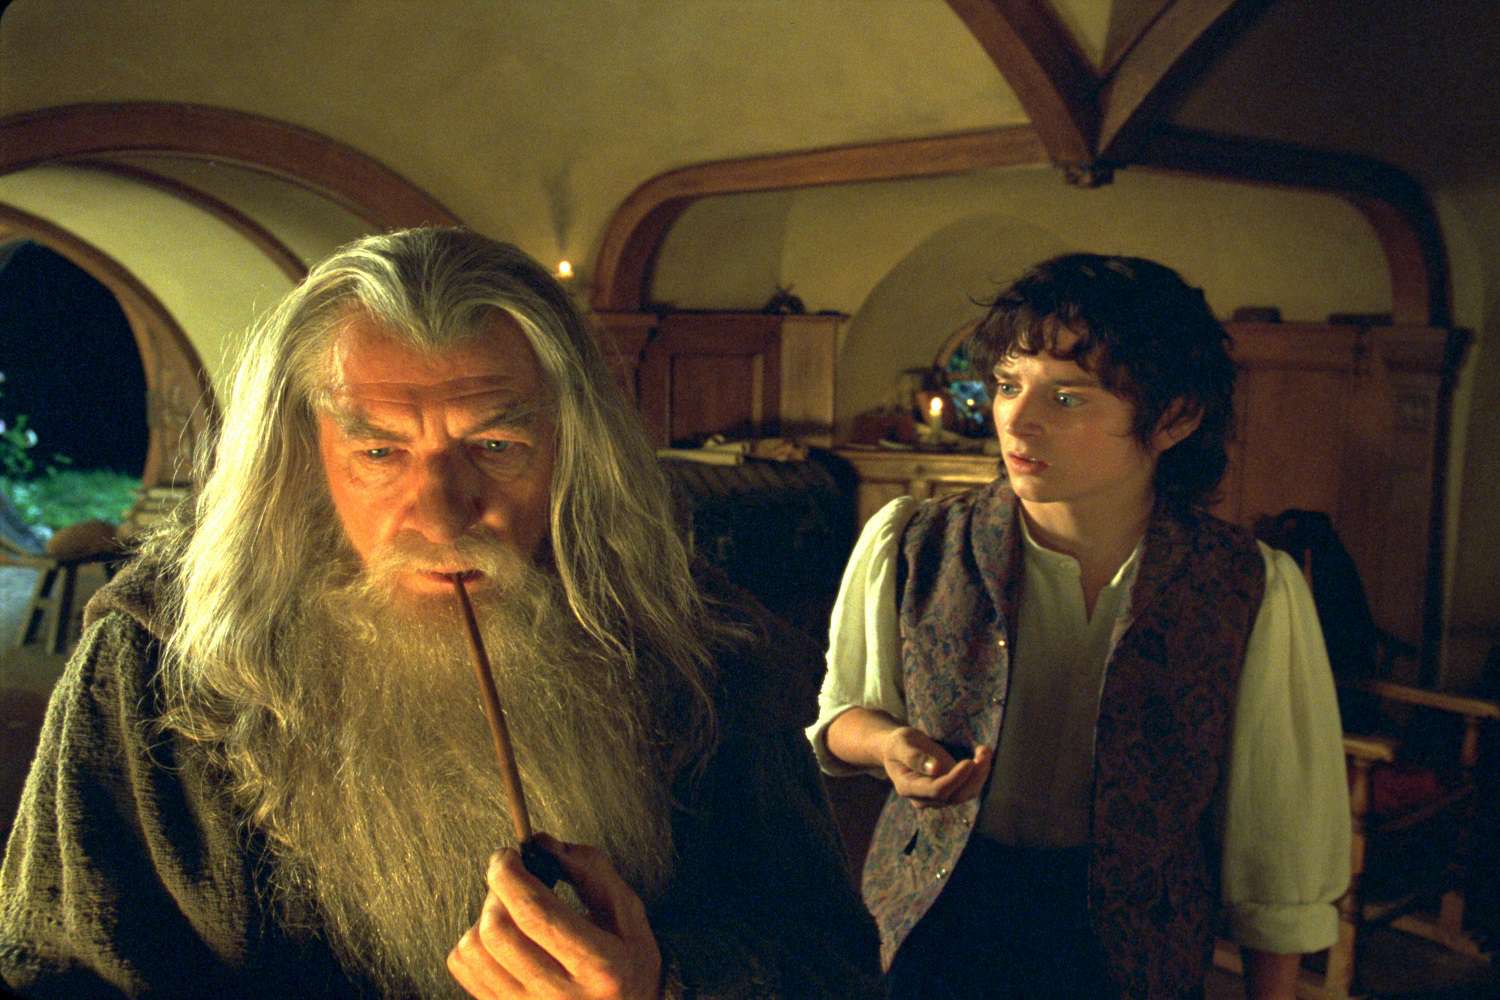 Een foto van een scène uit de film The Lord of the Rings: The Fellowship of the Ring.  De scène bevat de personages Gandalf en Frodo.